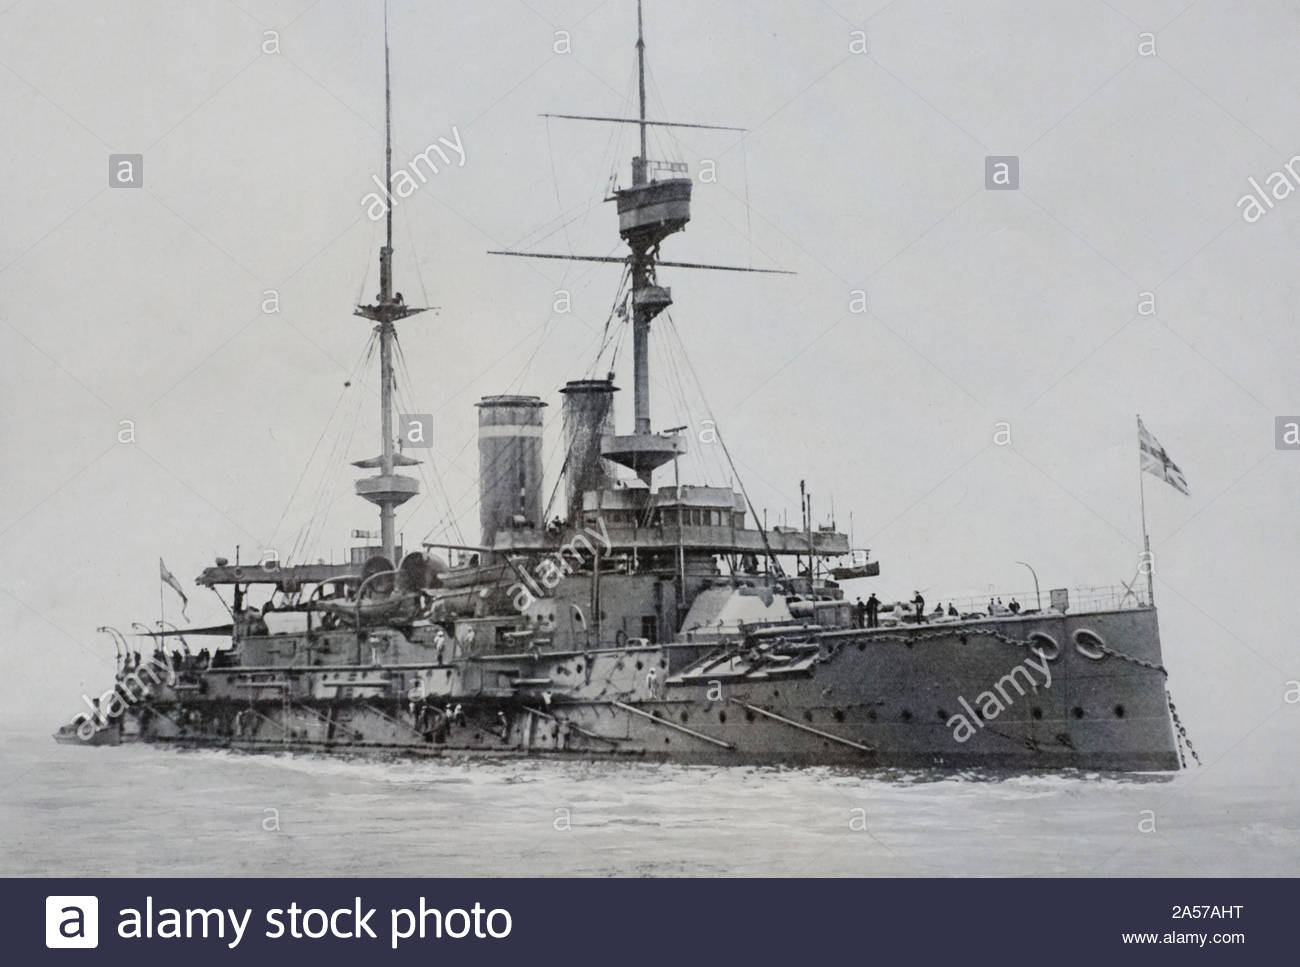 HMS Formidable, ein WW1 British pre-dreadnought Kriegsschiff, das Schiff im Jahr 1901 lanciert wurde und torpedod und am Neujahrstag 1915, vintage Foto Anfang 1900 versenkt s Stockfoto